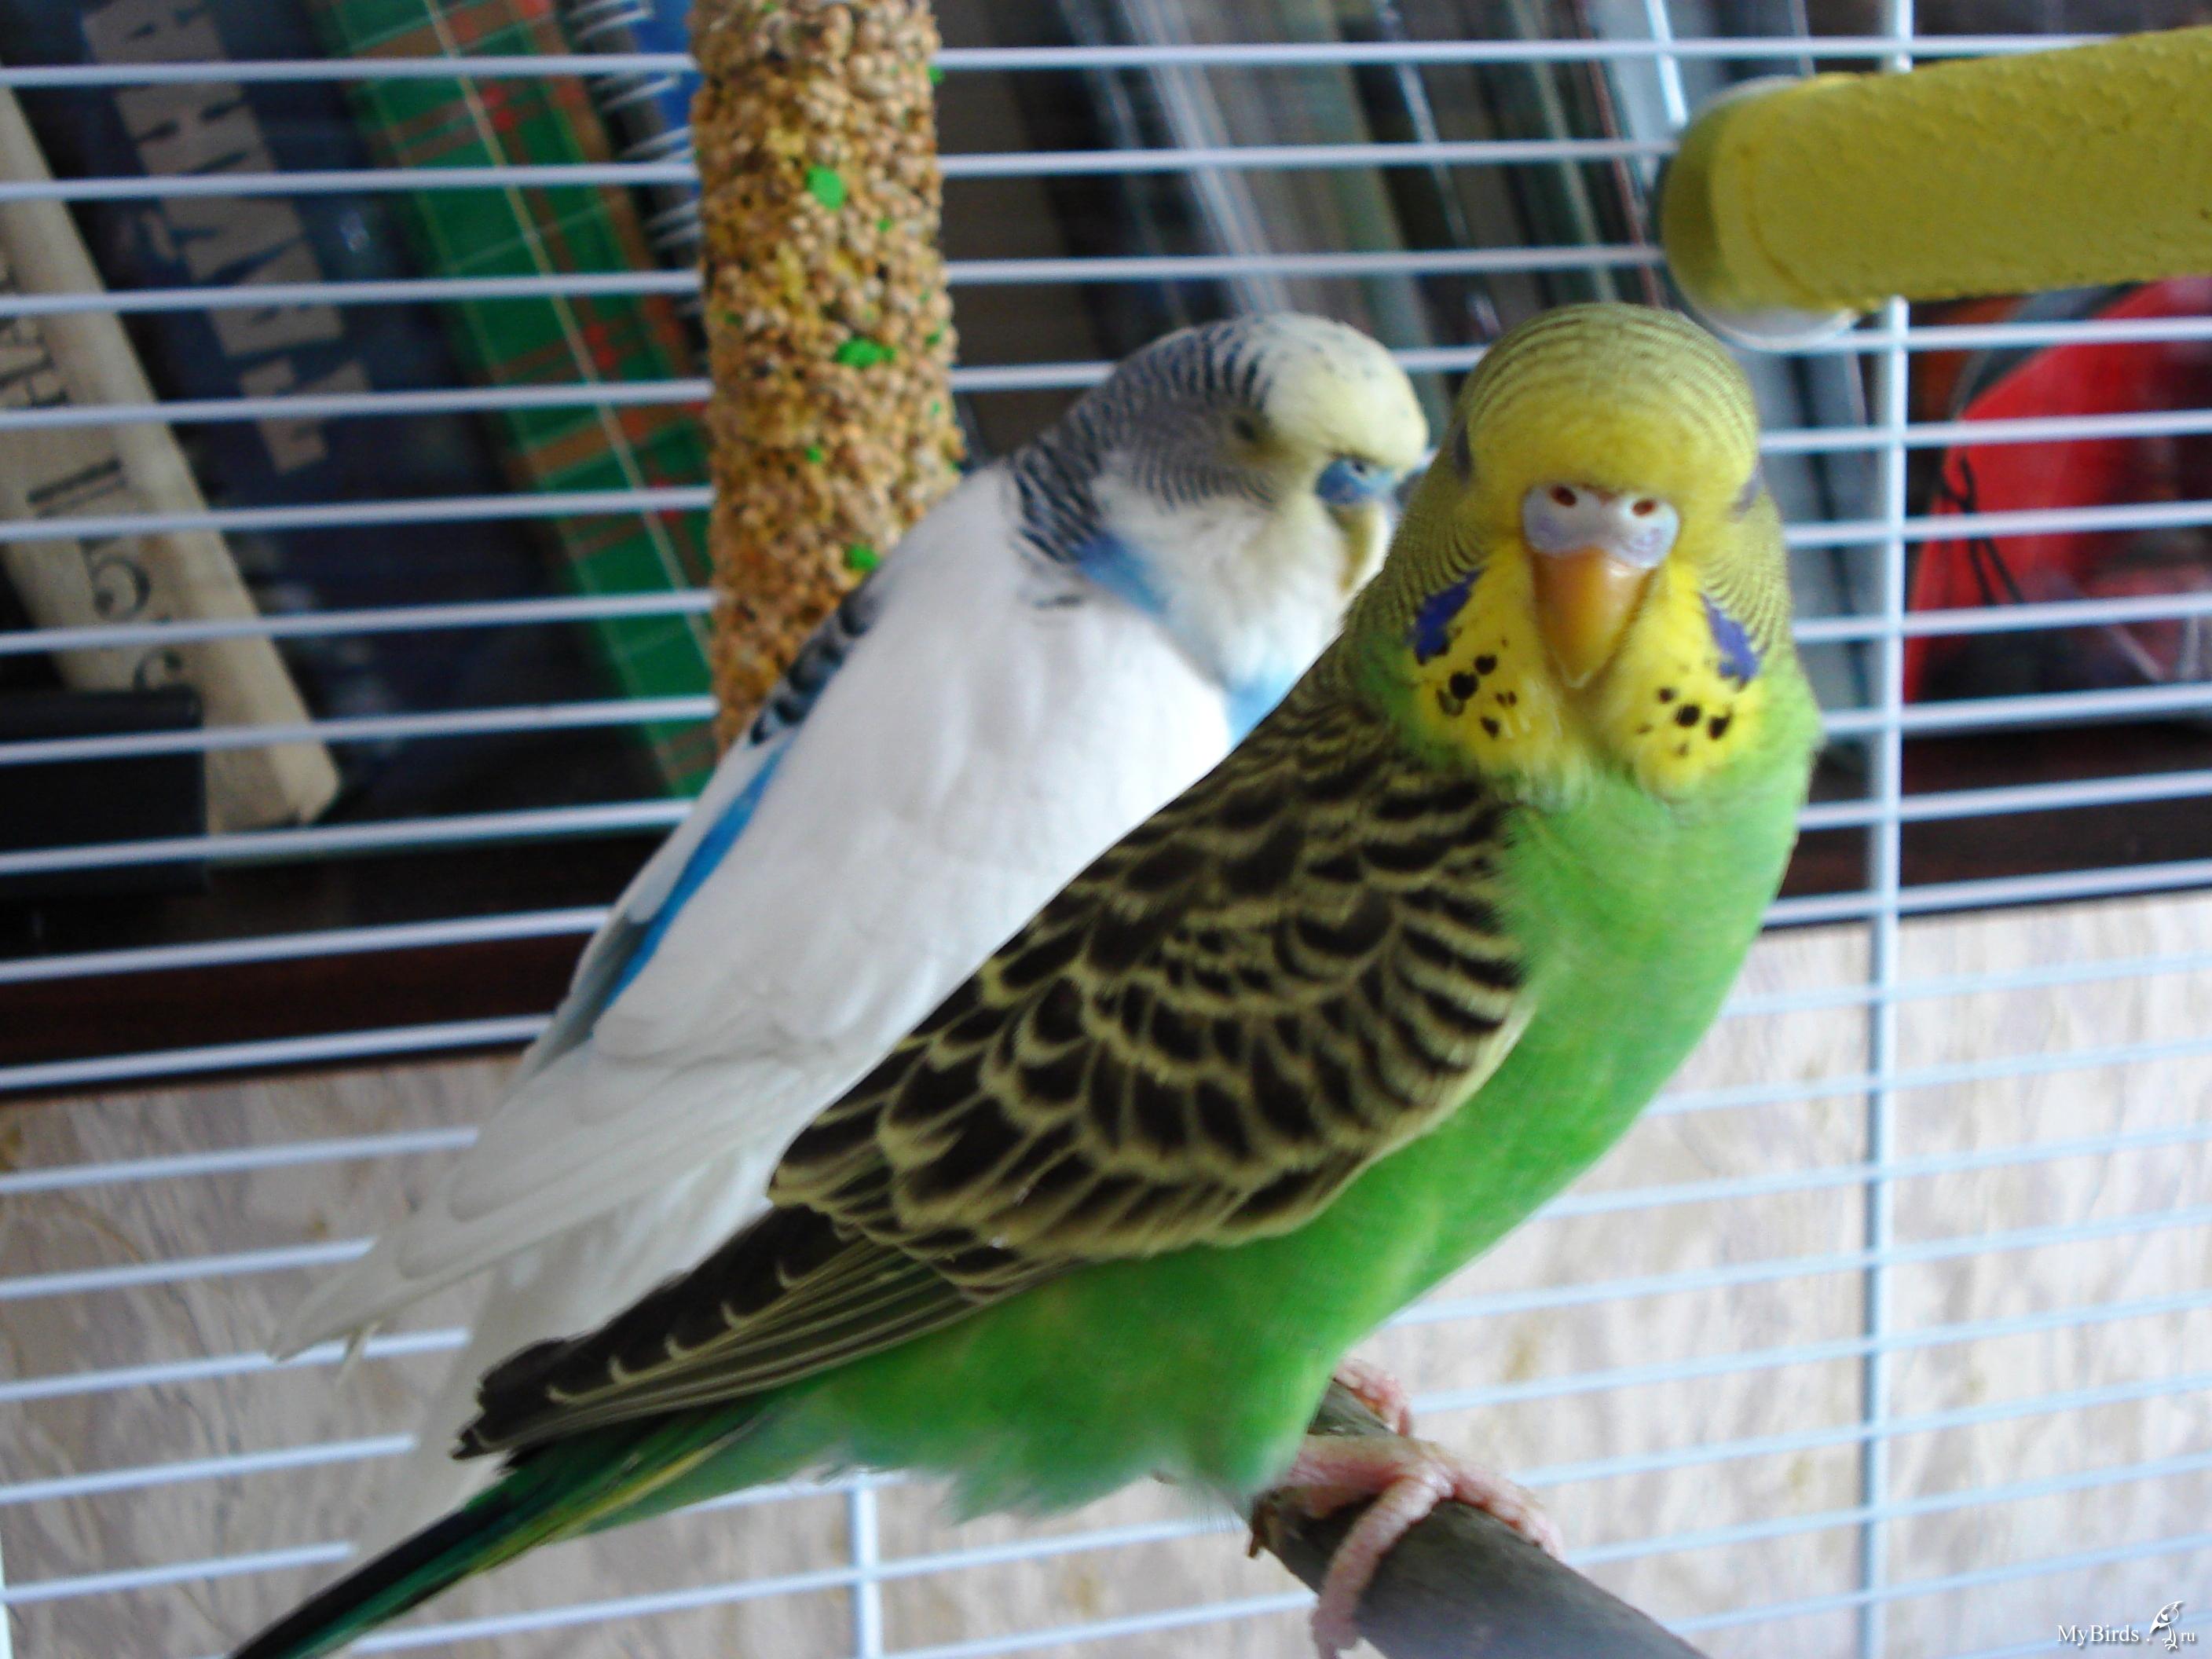 Как назвать попугая: имена для мальчьков и девочек, популярные клички